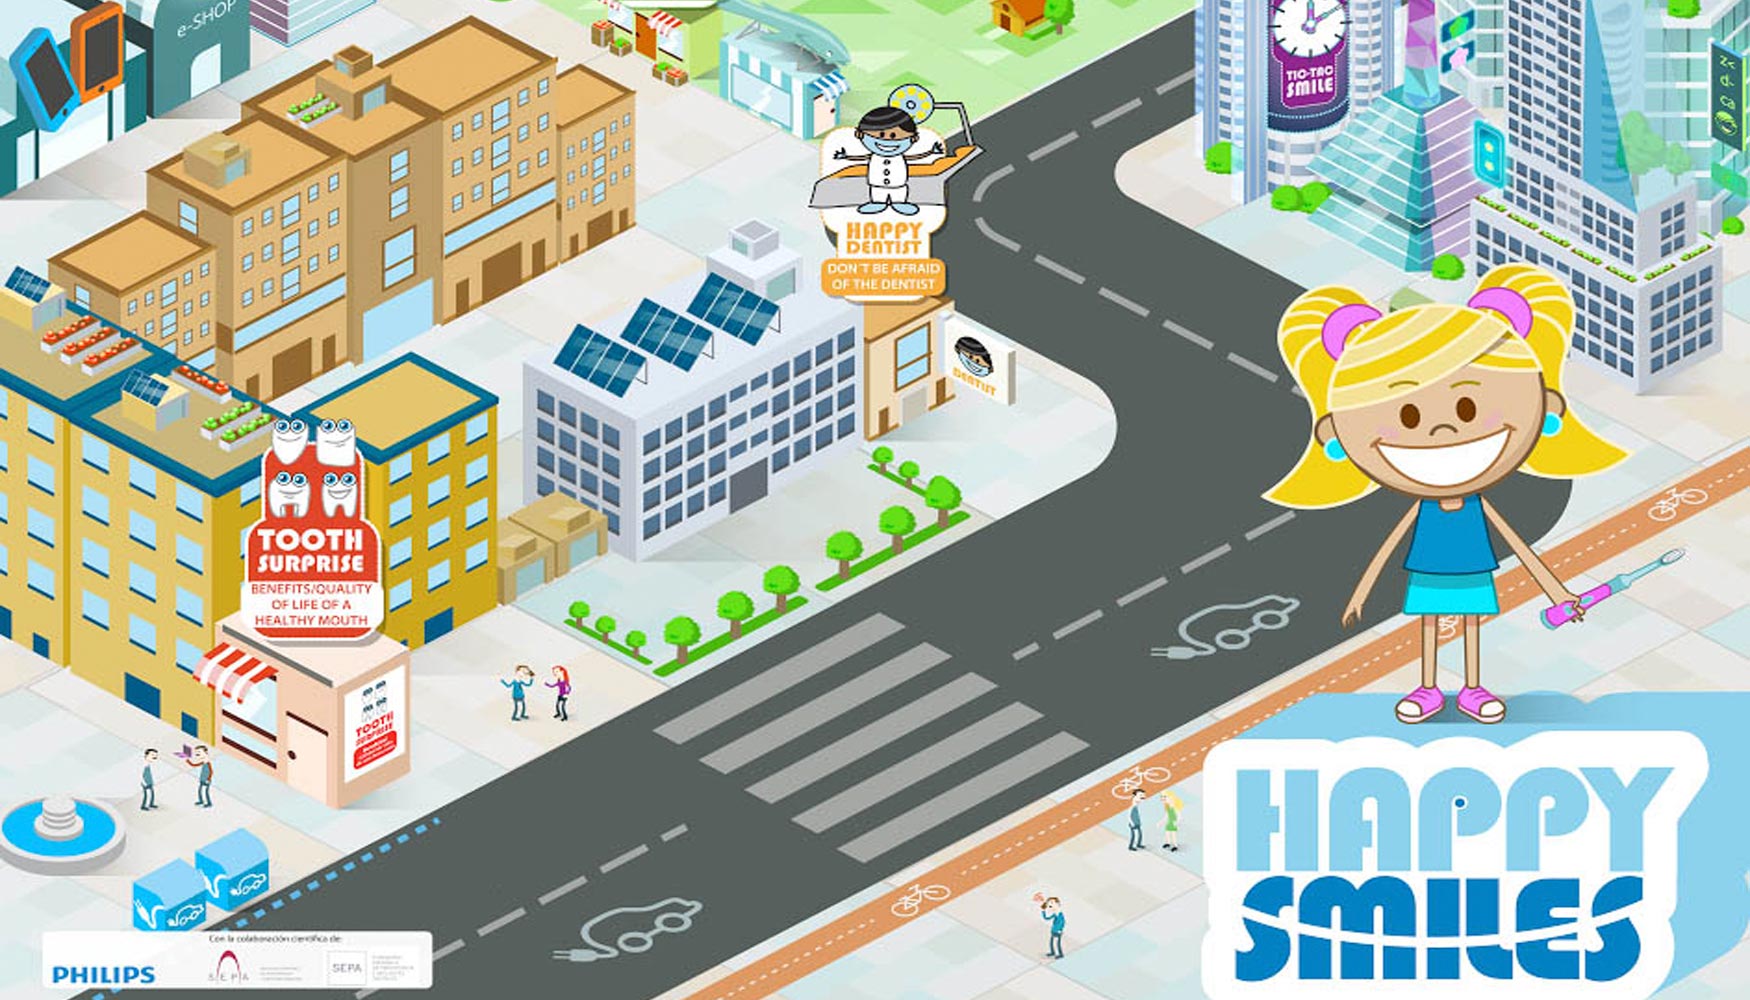 El juego recrea una smart city con distintas etapas del Happy Smiles Pathway